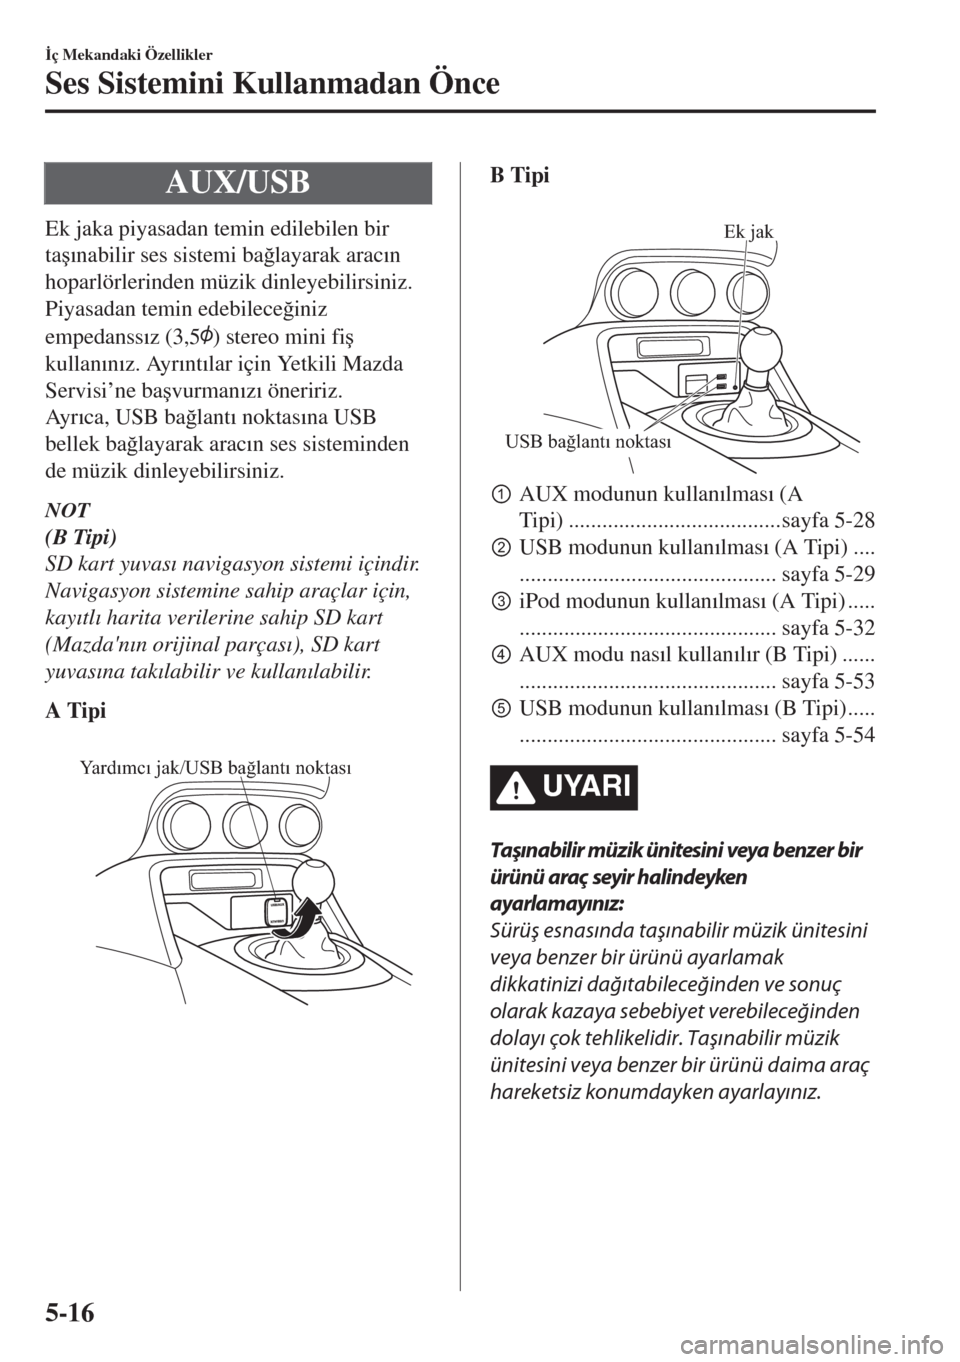 MAZDA MODEL MX-5 2018  Kullanım Kılavuzu (in Turkish) AUX/USB
Ek jaka piyasadan temin edilebilen bir
ta�ú�Õnabilir ses sistemi ba�÷layarak arac�Õn
hoparlörlerinden müzik dinleyebilirsiniz.
Piyasadan temin edebilece�÷iniz
empedanss�Õz (3,5
) stere